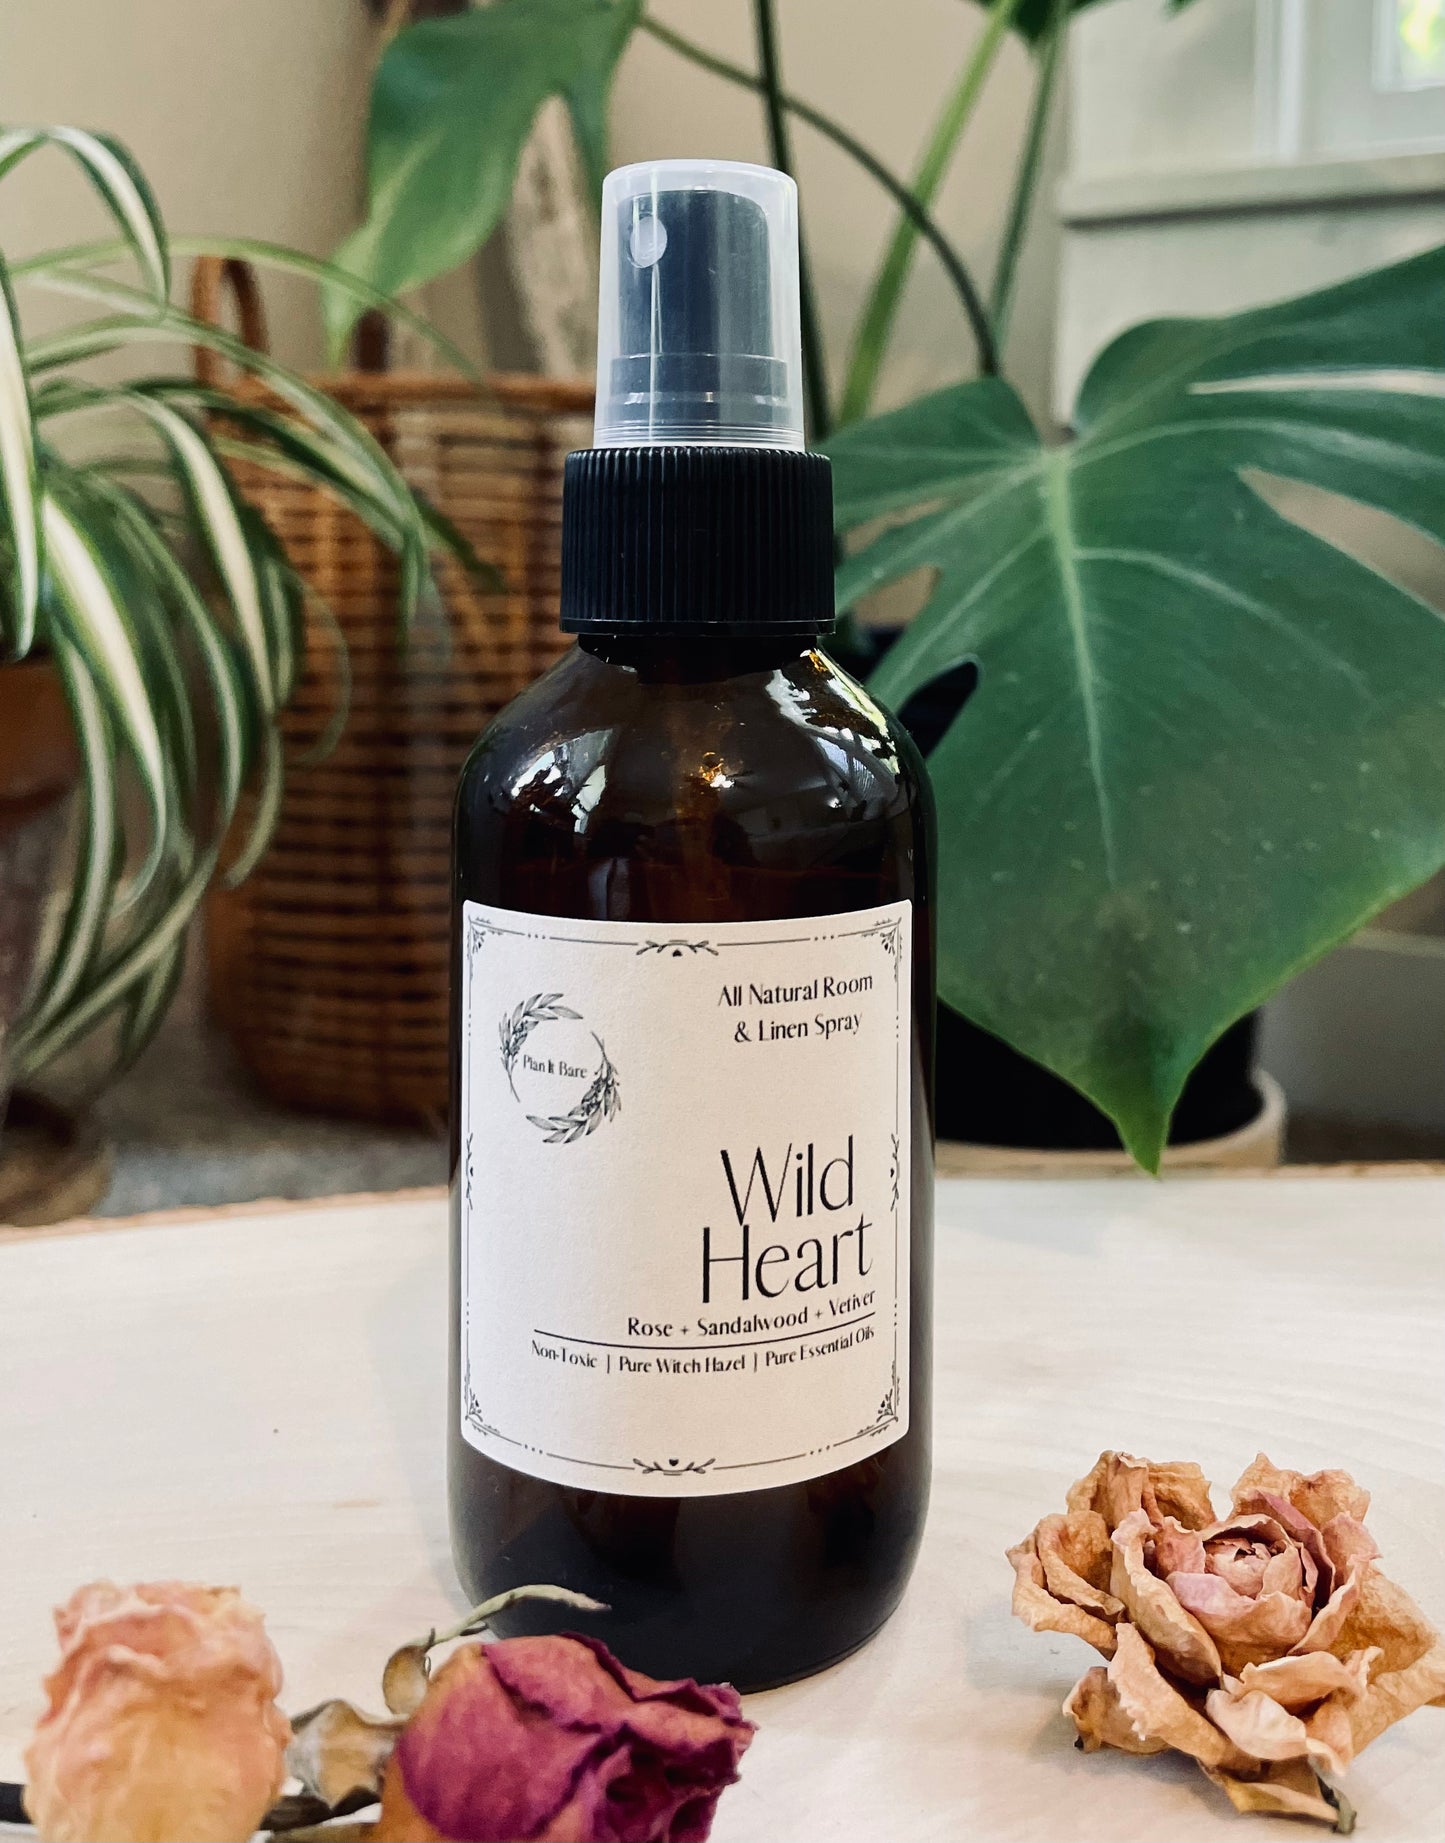 All Natural Room & Linen Spray— Wild Heart